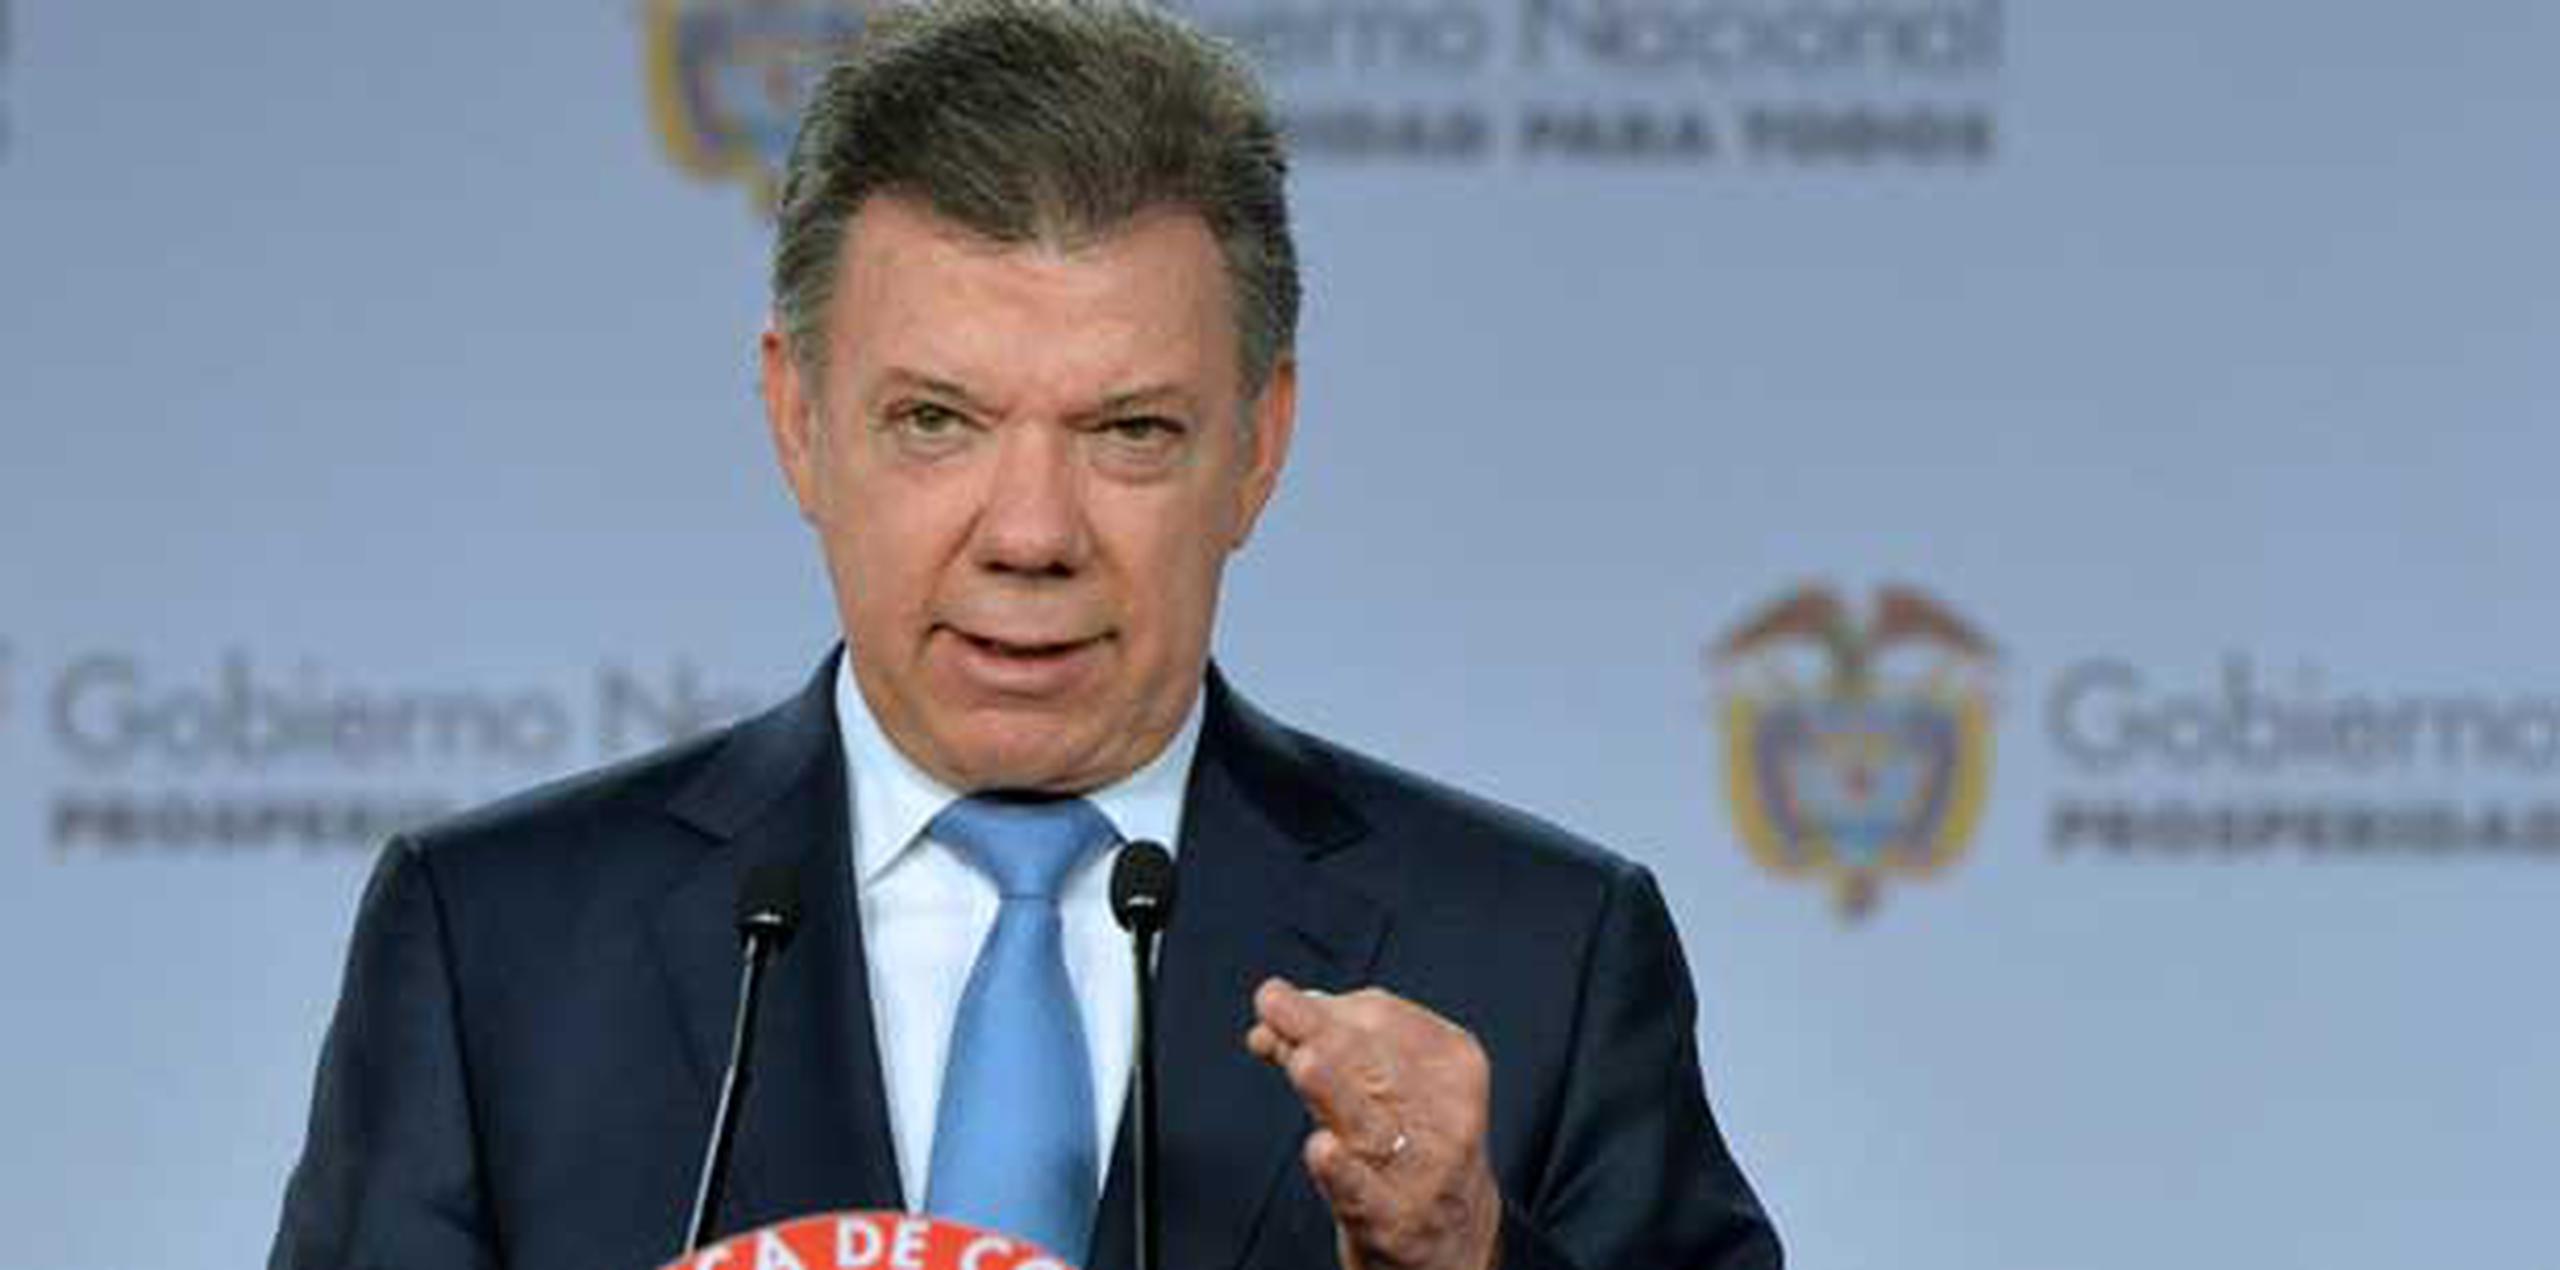 El presidente Juan Manuel Santos busca la reelección en los comicios del 25 de mayo.  (Archivo)